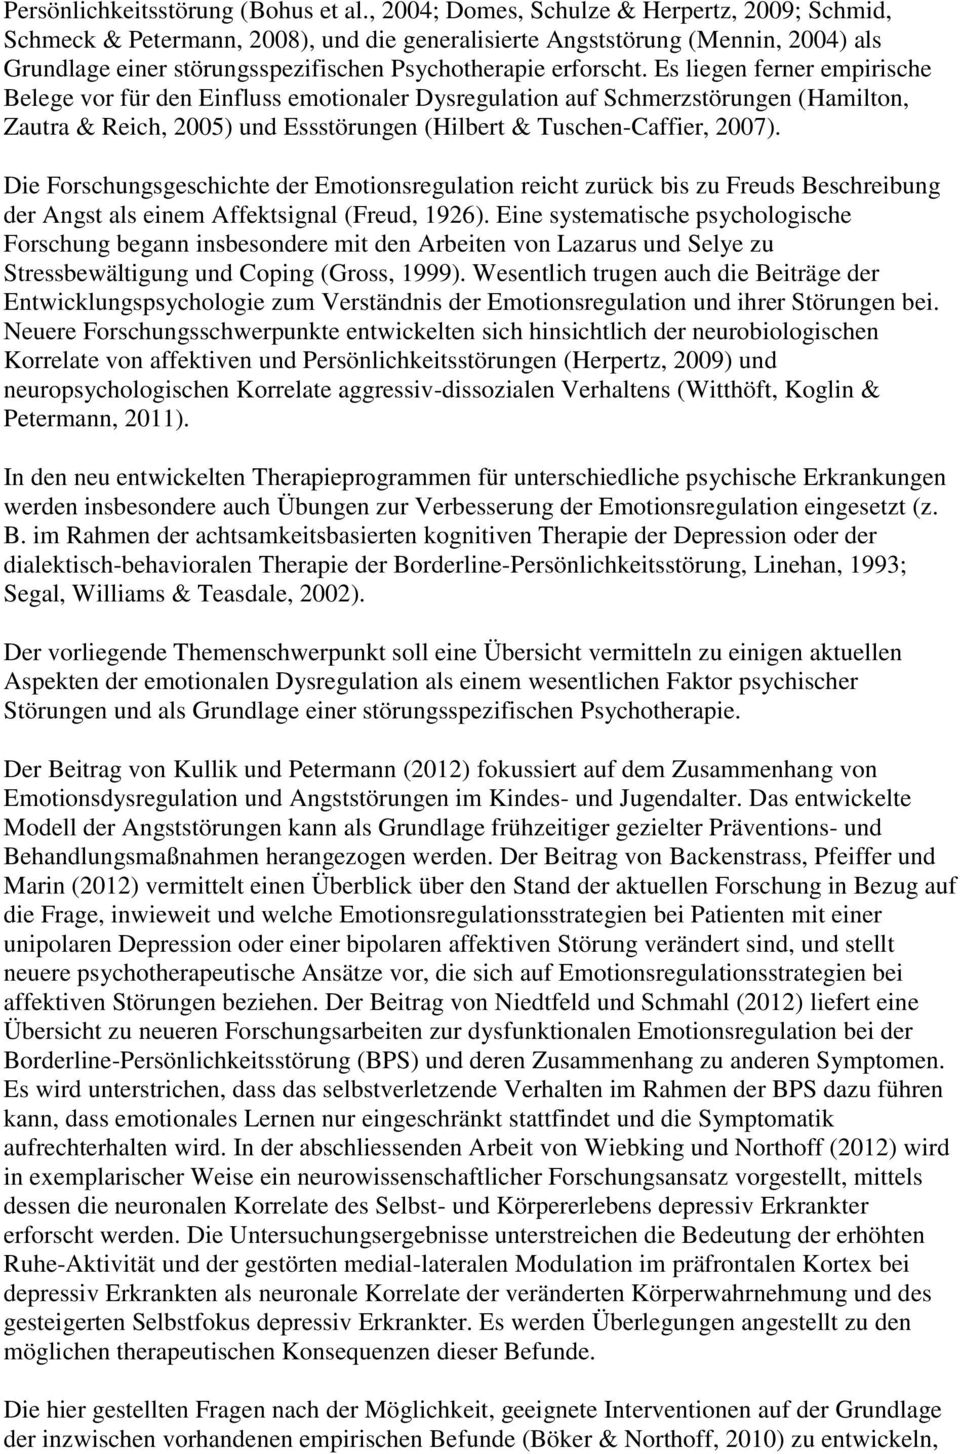 Es liegen ferner empirische Belege vor für den Einfluss emotionaler Dysregulation auf Schmerzstörungen (Hamilton, Zautra & Reich, 2005) und Essstörungen (Hilbert & Tuschen-Caffier, 2007).